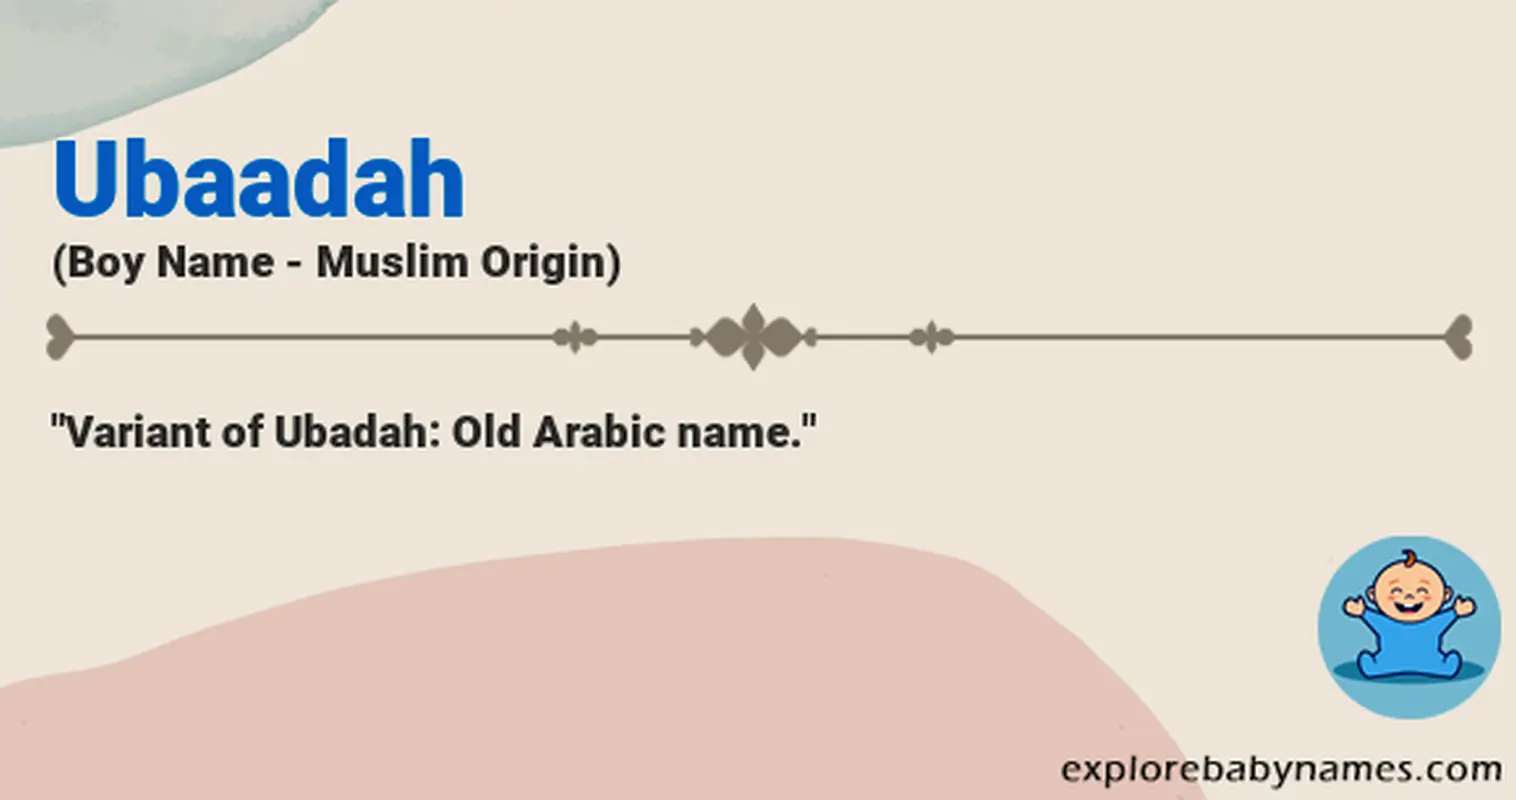 Meaning of Ubaadah